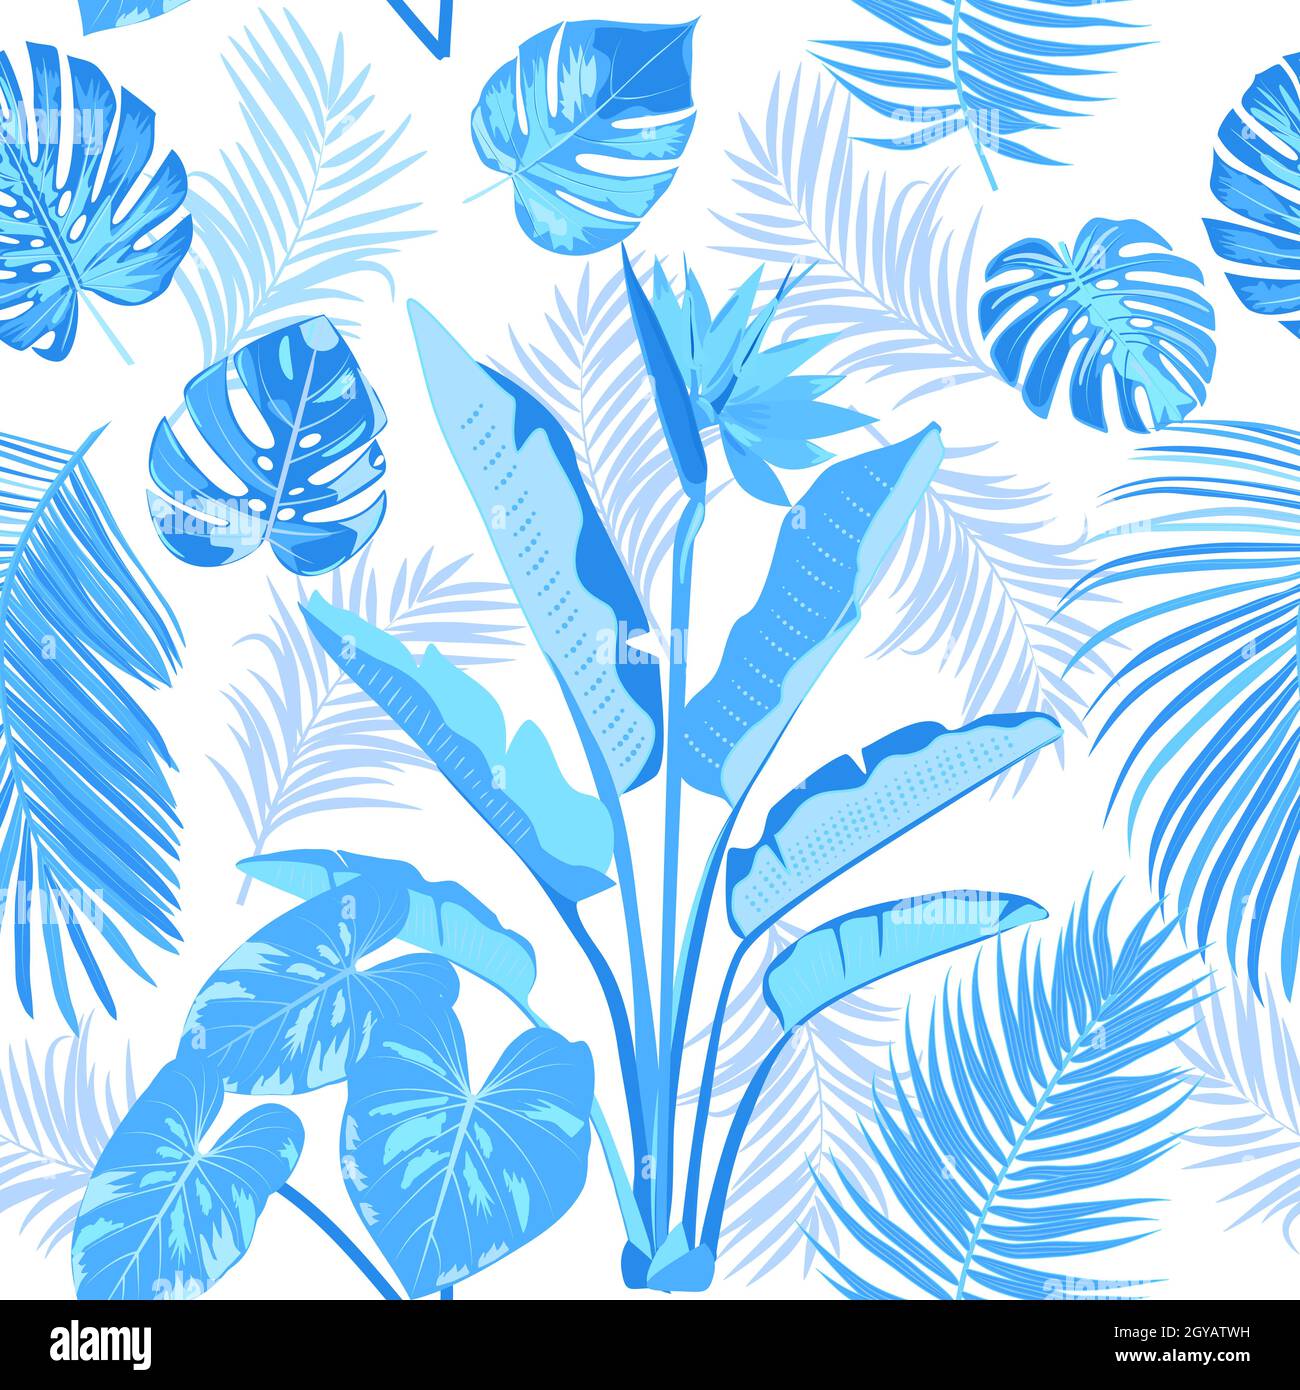 Khám phá họa tiết lá xanh của cây cọ - một thiết kế mang tính chất nhiệt đới với những chi tiết sinh động, trẻ trung và đầy sáng tạo. Từ những chiếc lá xanh phong cách sẽ làm cho bạn cảm thấy như đang du lịch đến một khu vườn nhiệt đới xa xôi.